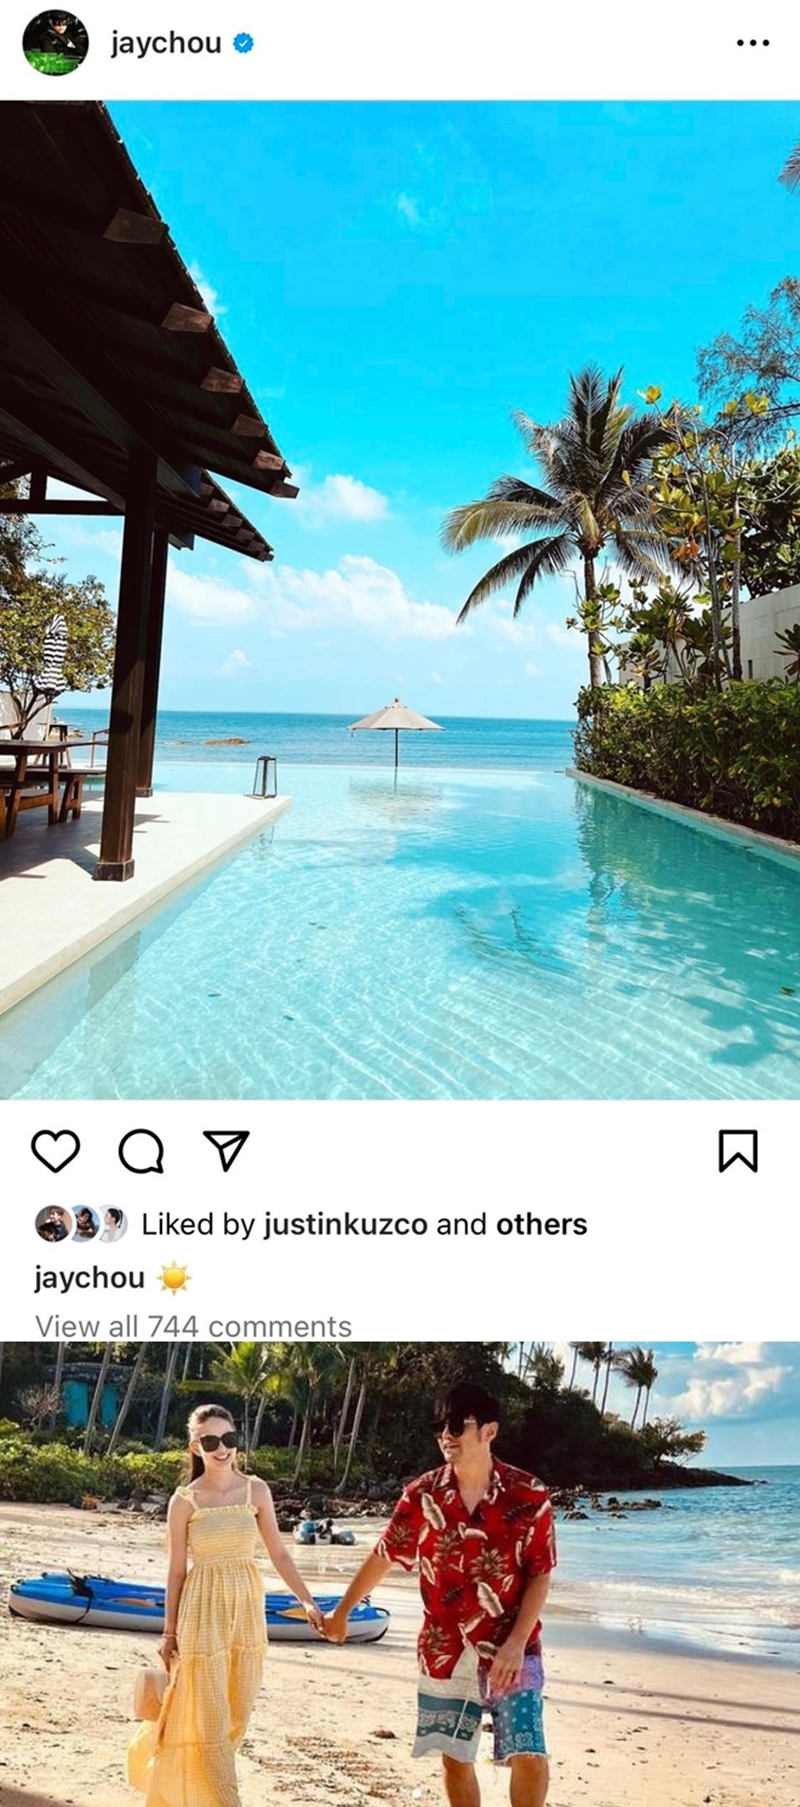 週傑倫懶理球迷留言，分享蘇梅島的美景照片，享受陽光與海灘，無損度假心情。